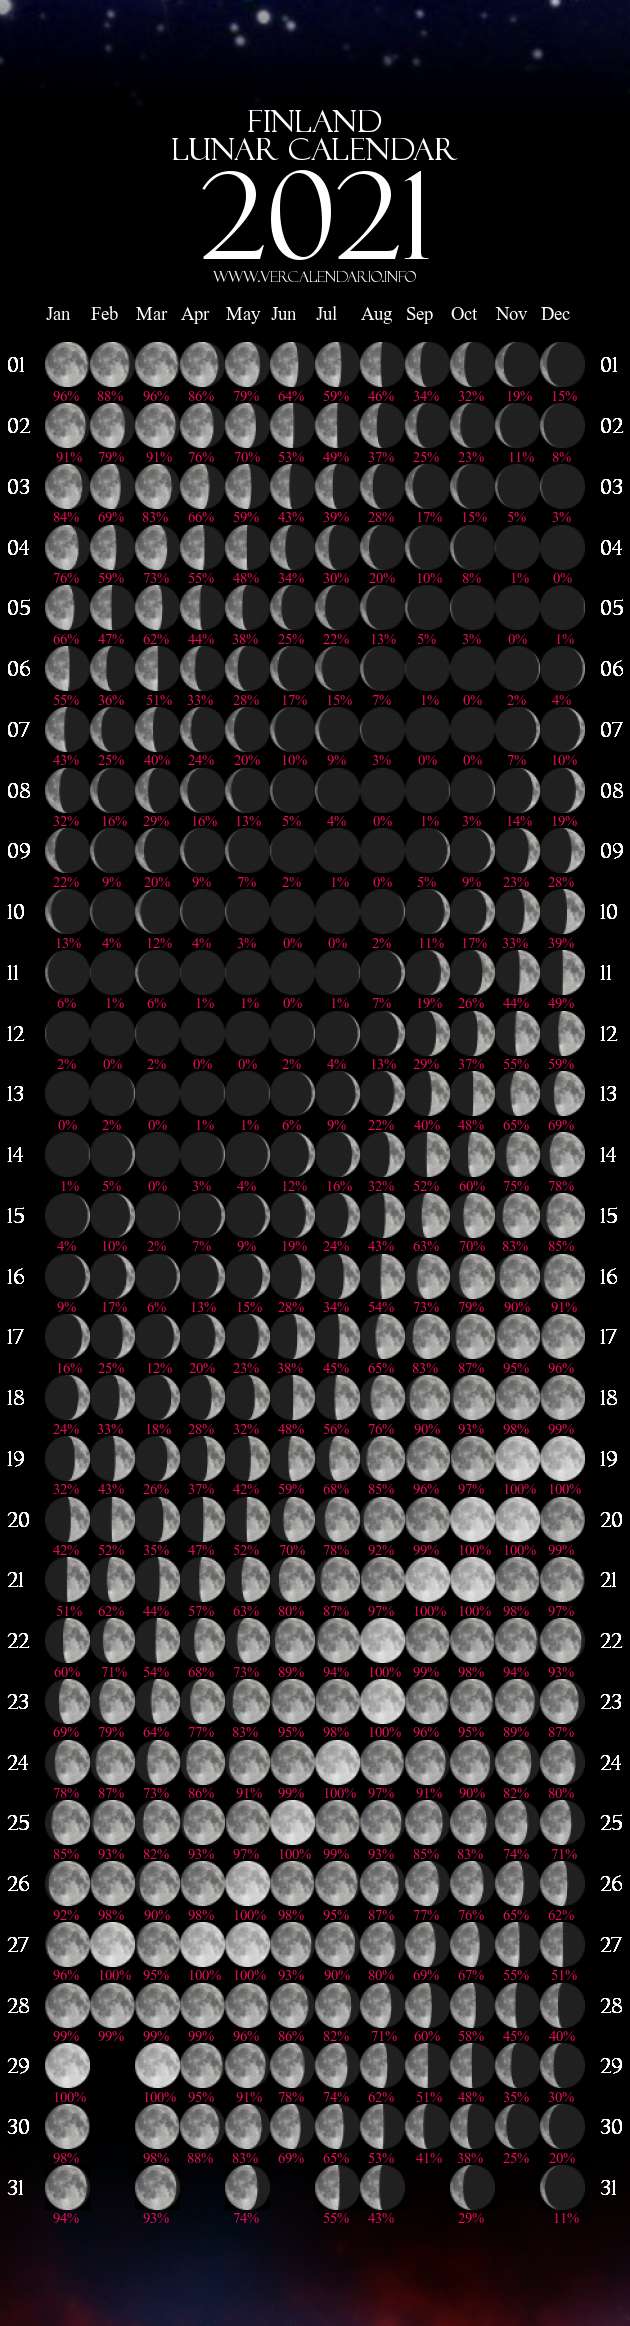 moon cycle calendar 2021 Lunar Calendar 2021 Finland moon cycle calendar 2021